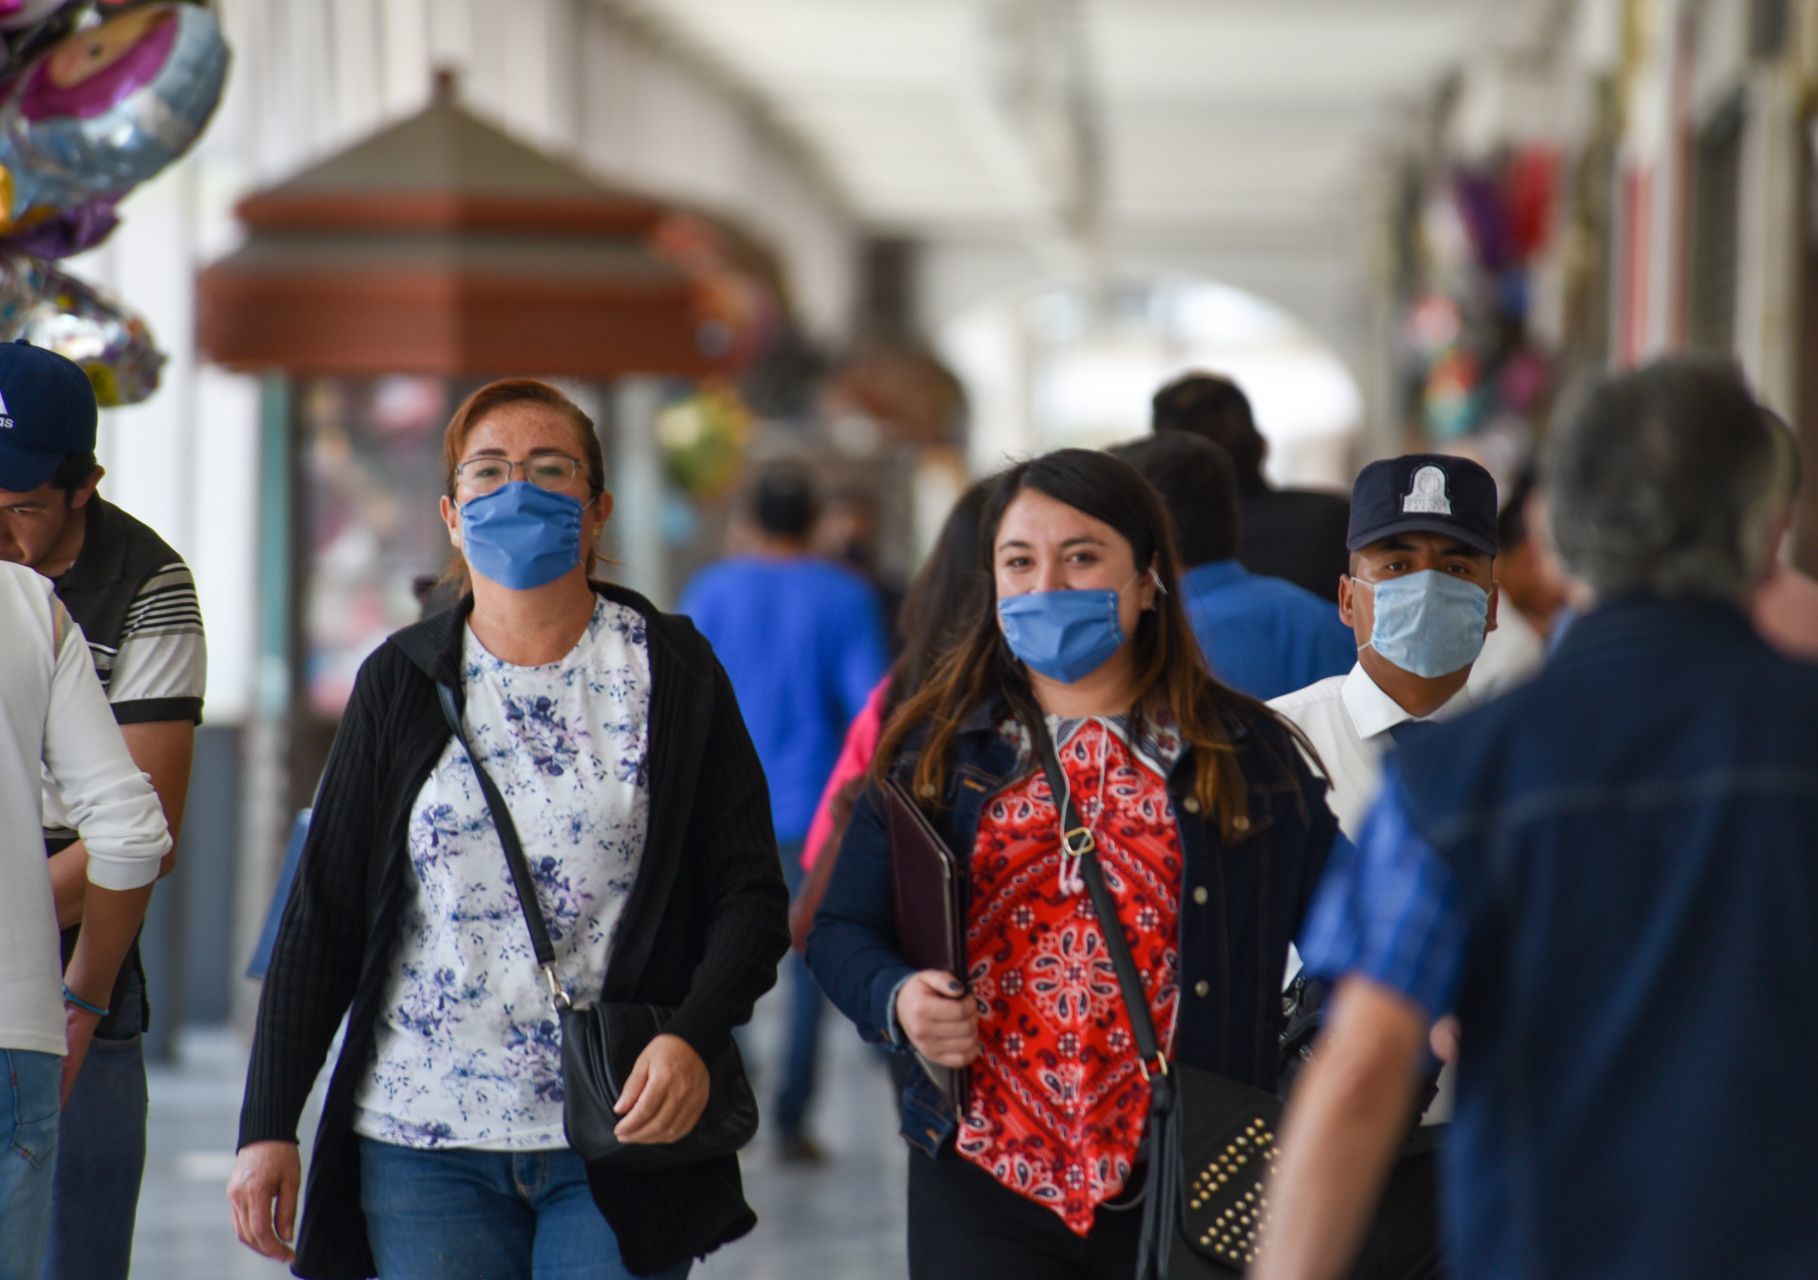 Nuevo León et Tamulipas sont d'autres États qui ont mis en place l'utilisation obligatoire de masques faciaux (PHOTO : CRISANTA ESPINOSA AGUILAR / CUARTOSCURO.COM)